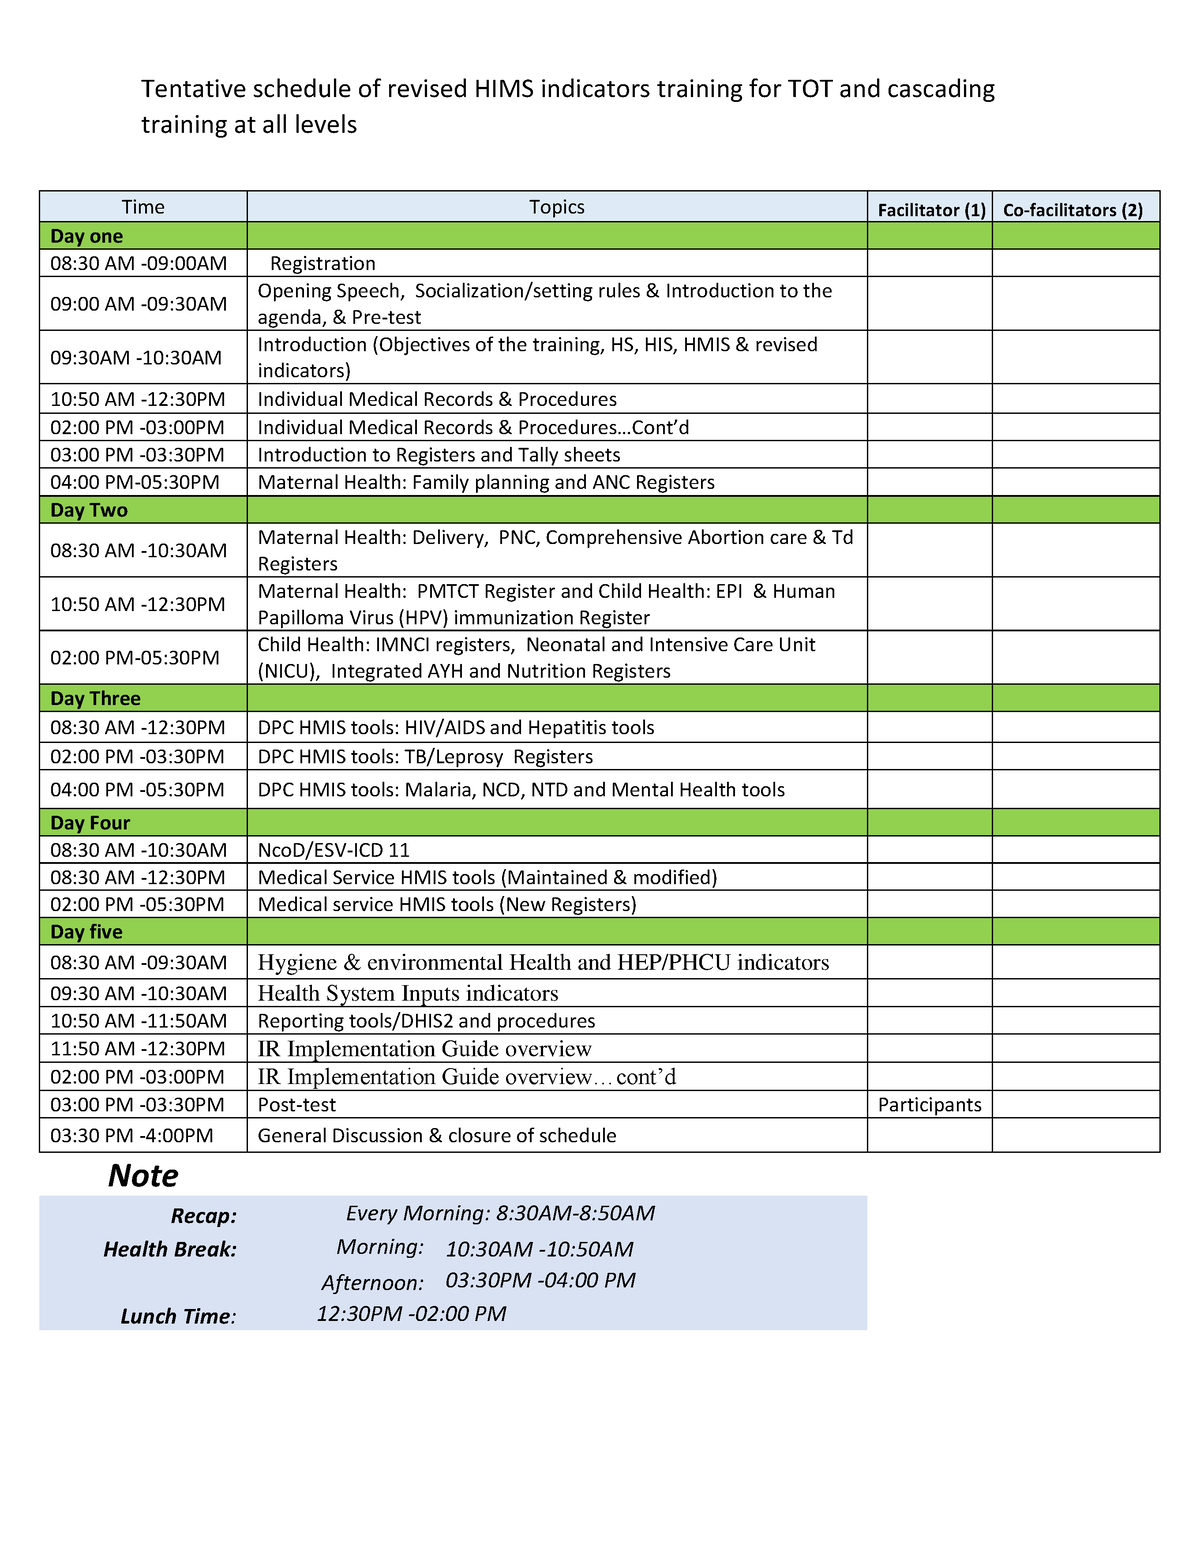 Revised HMIS Indicators Training Schedule Tentative schedule of